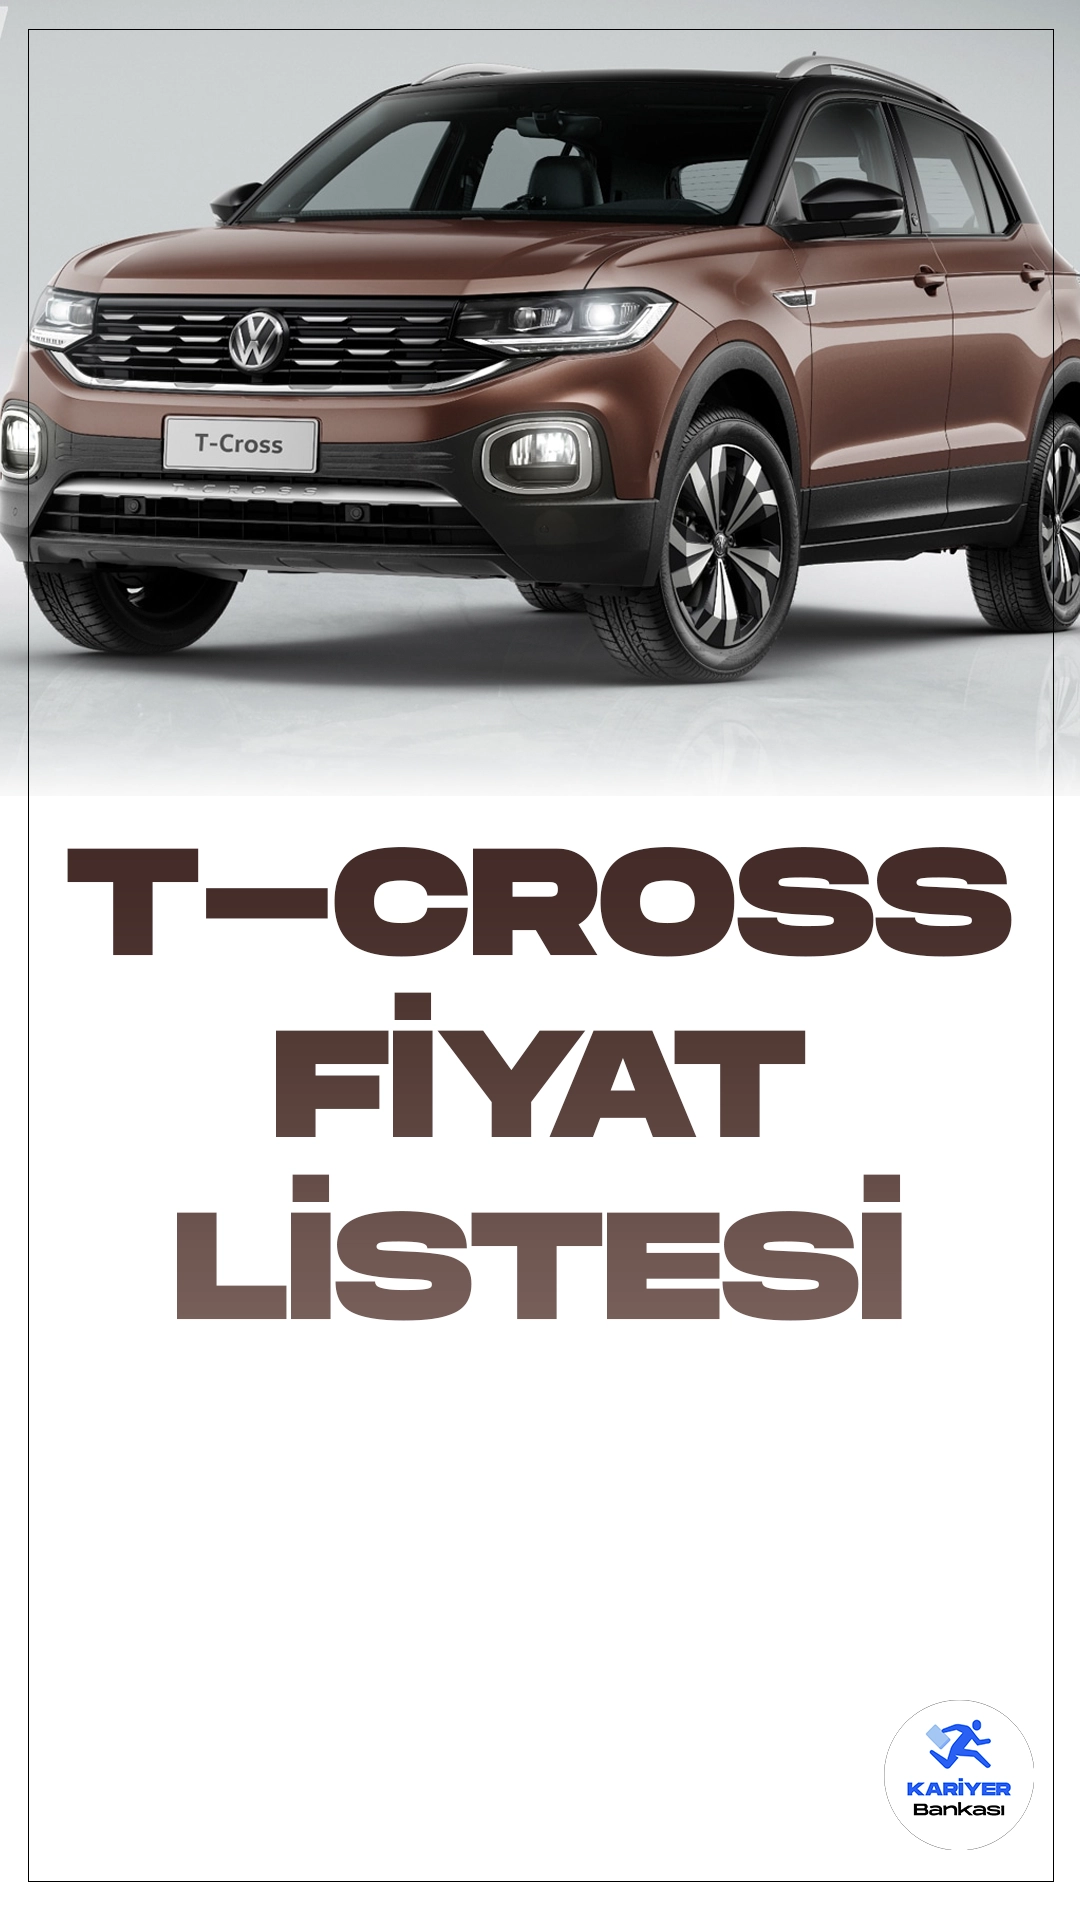 Volkswagen T-Cross Ocak 2024 Fiyat Listesi Yayımlandı. Alman otomobil üreticisi Volkswagen, kompakt SUV segmentindeki iddiasını güçlendirmek için T-Cross modelini tanıttı. Yenilikçi tasarımı ve şehir içi kullanıma uygun özellikleriyle dikkat çeken T-Cross, kompakt boyutlarına rağmen geniş iç mekanıyla sürücülere ferah bir deneyim sunuyor.